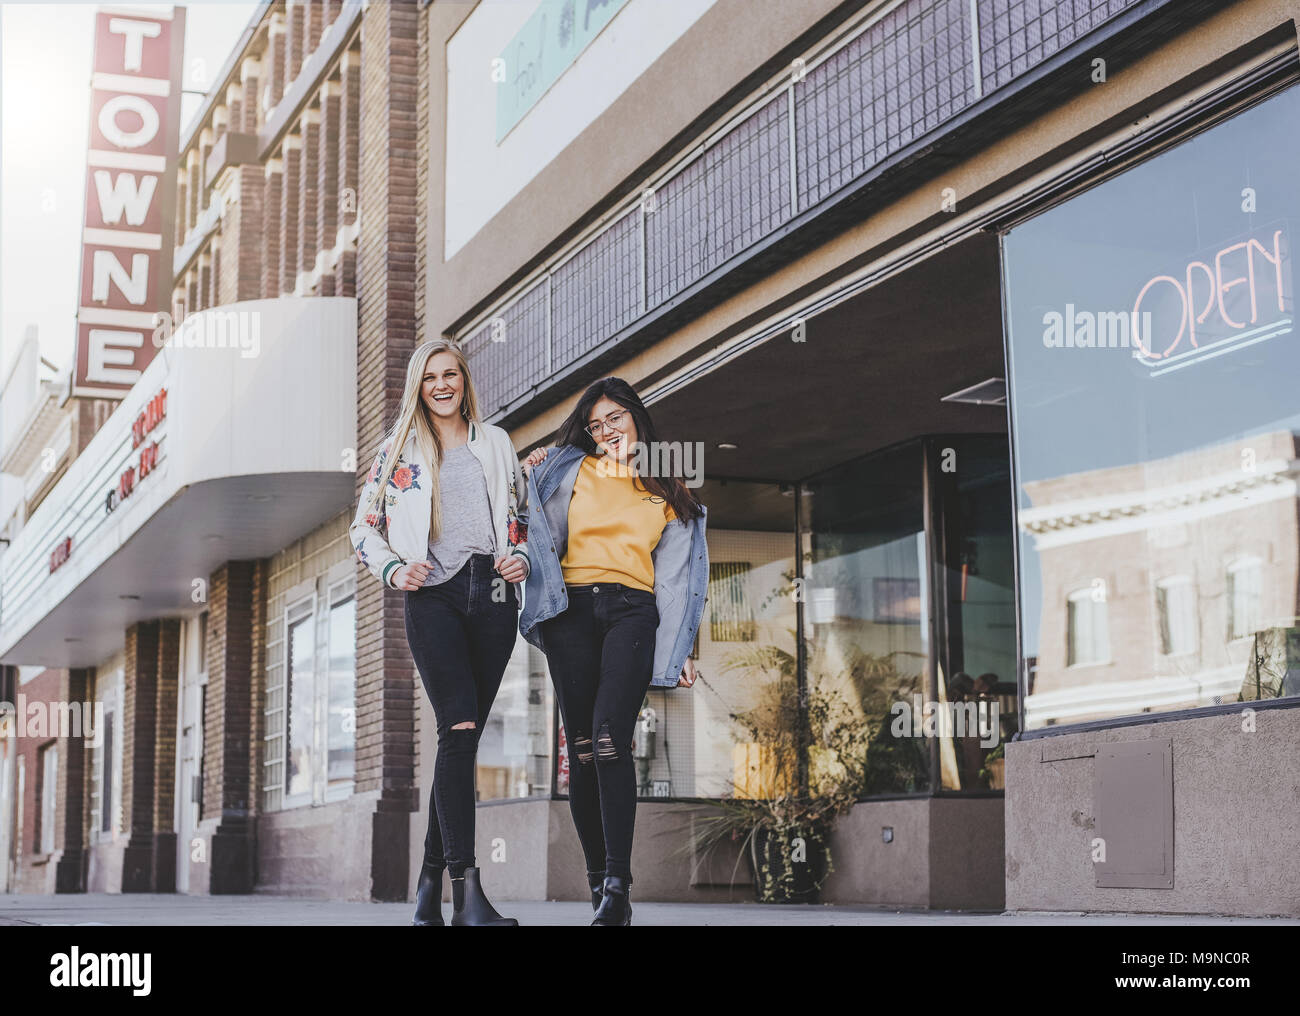 Zwei hübsche junge Mädchen lachen und gehen hinunter eine Straße in der Innenstadt Stockfoto